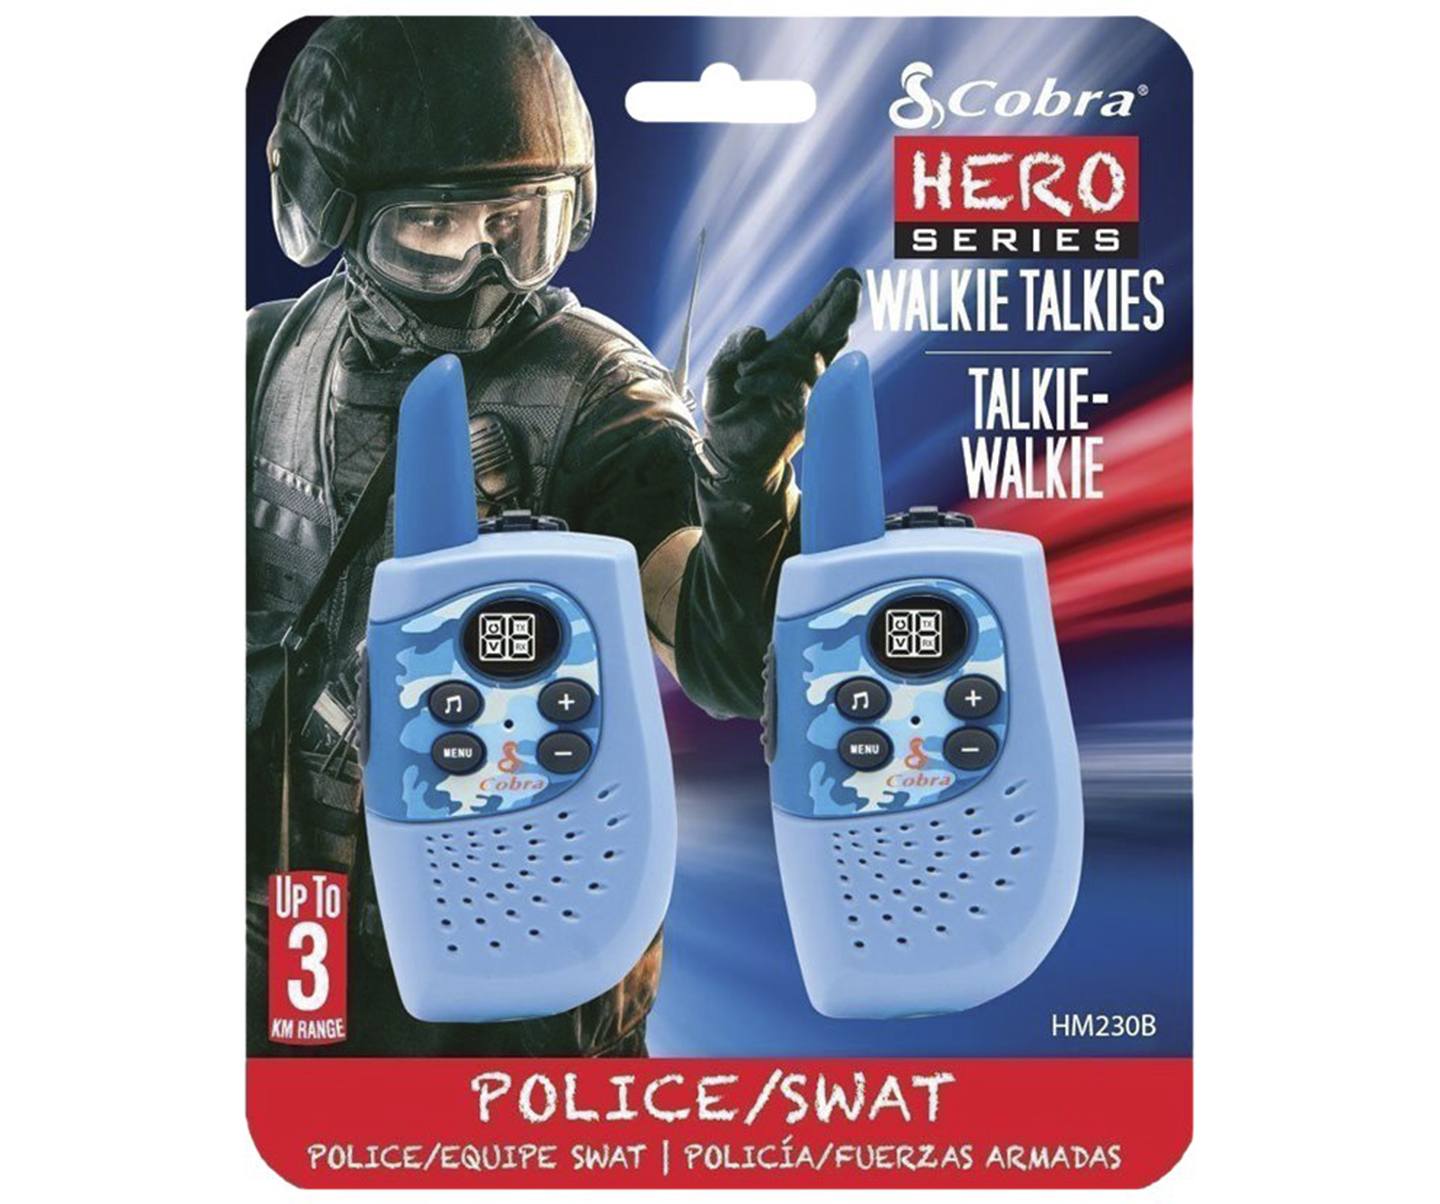 Cobra Hero Series Police HM230B Tovejs radio 8 kanaler 3km taleområde